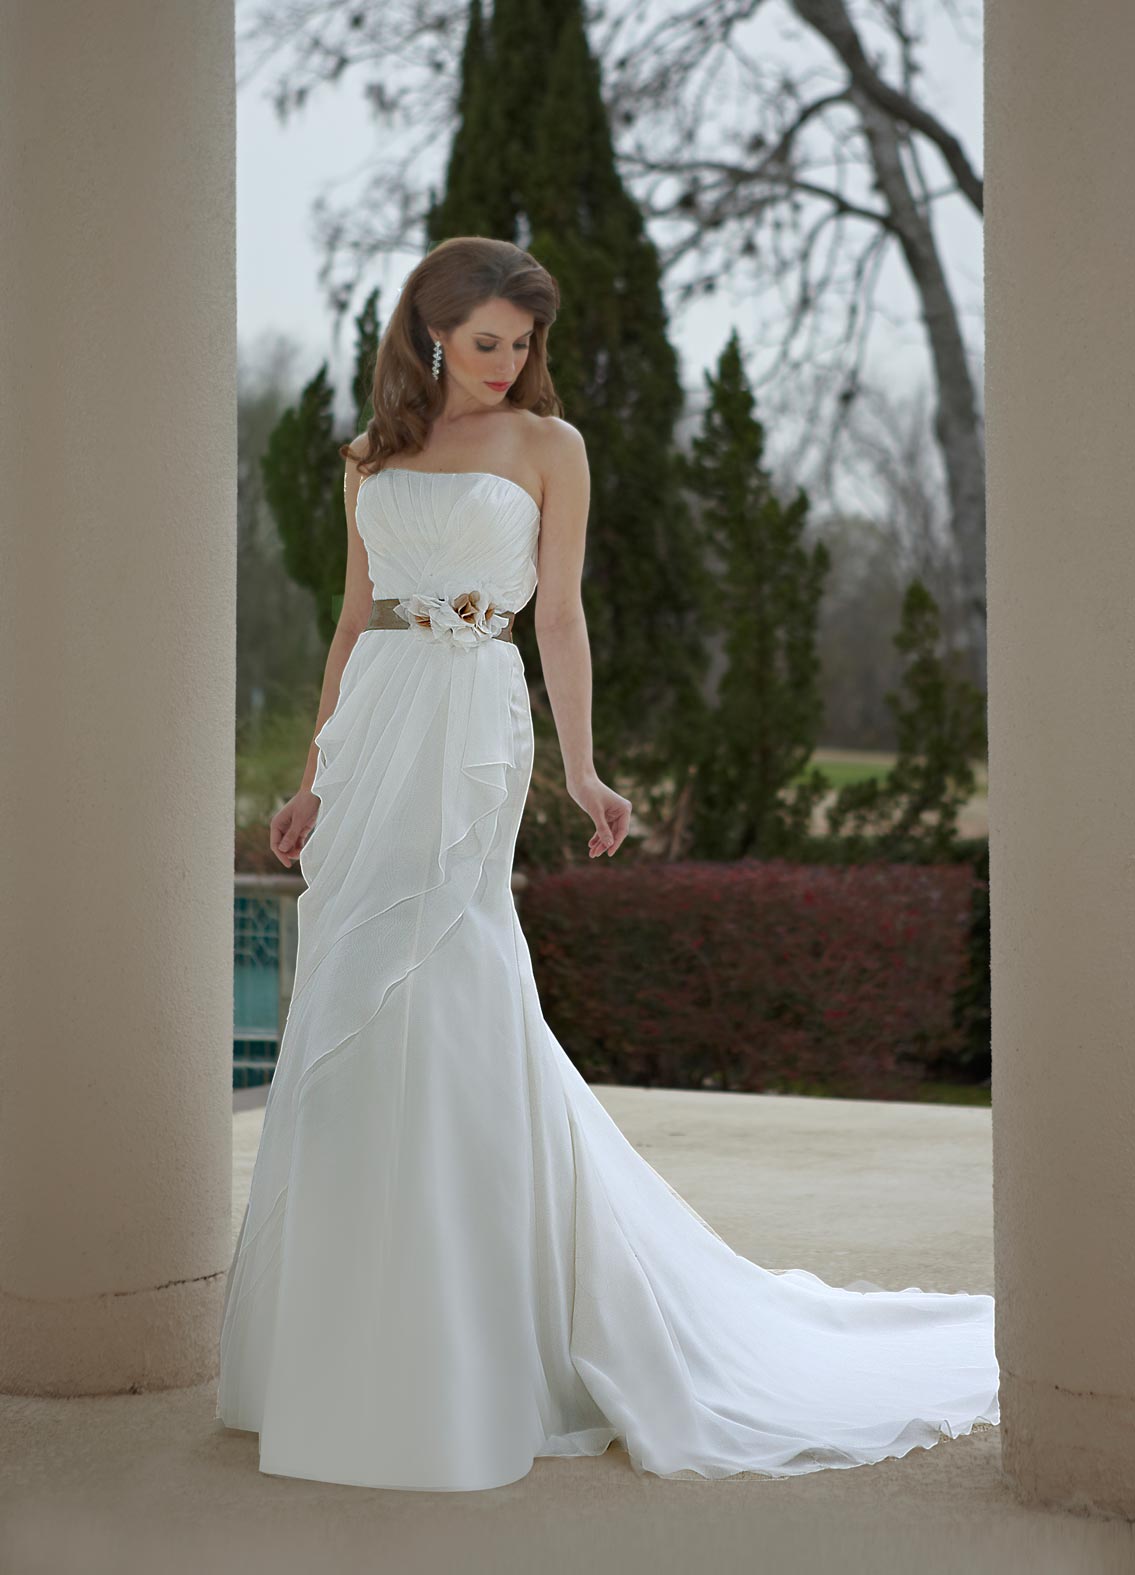 Best Prom Dress Color Trends | David's Bridal Blog